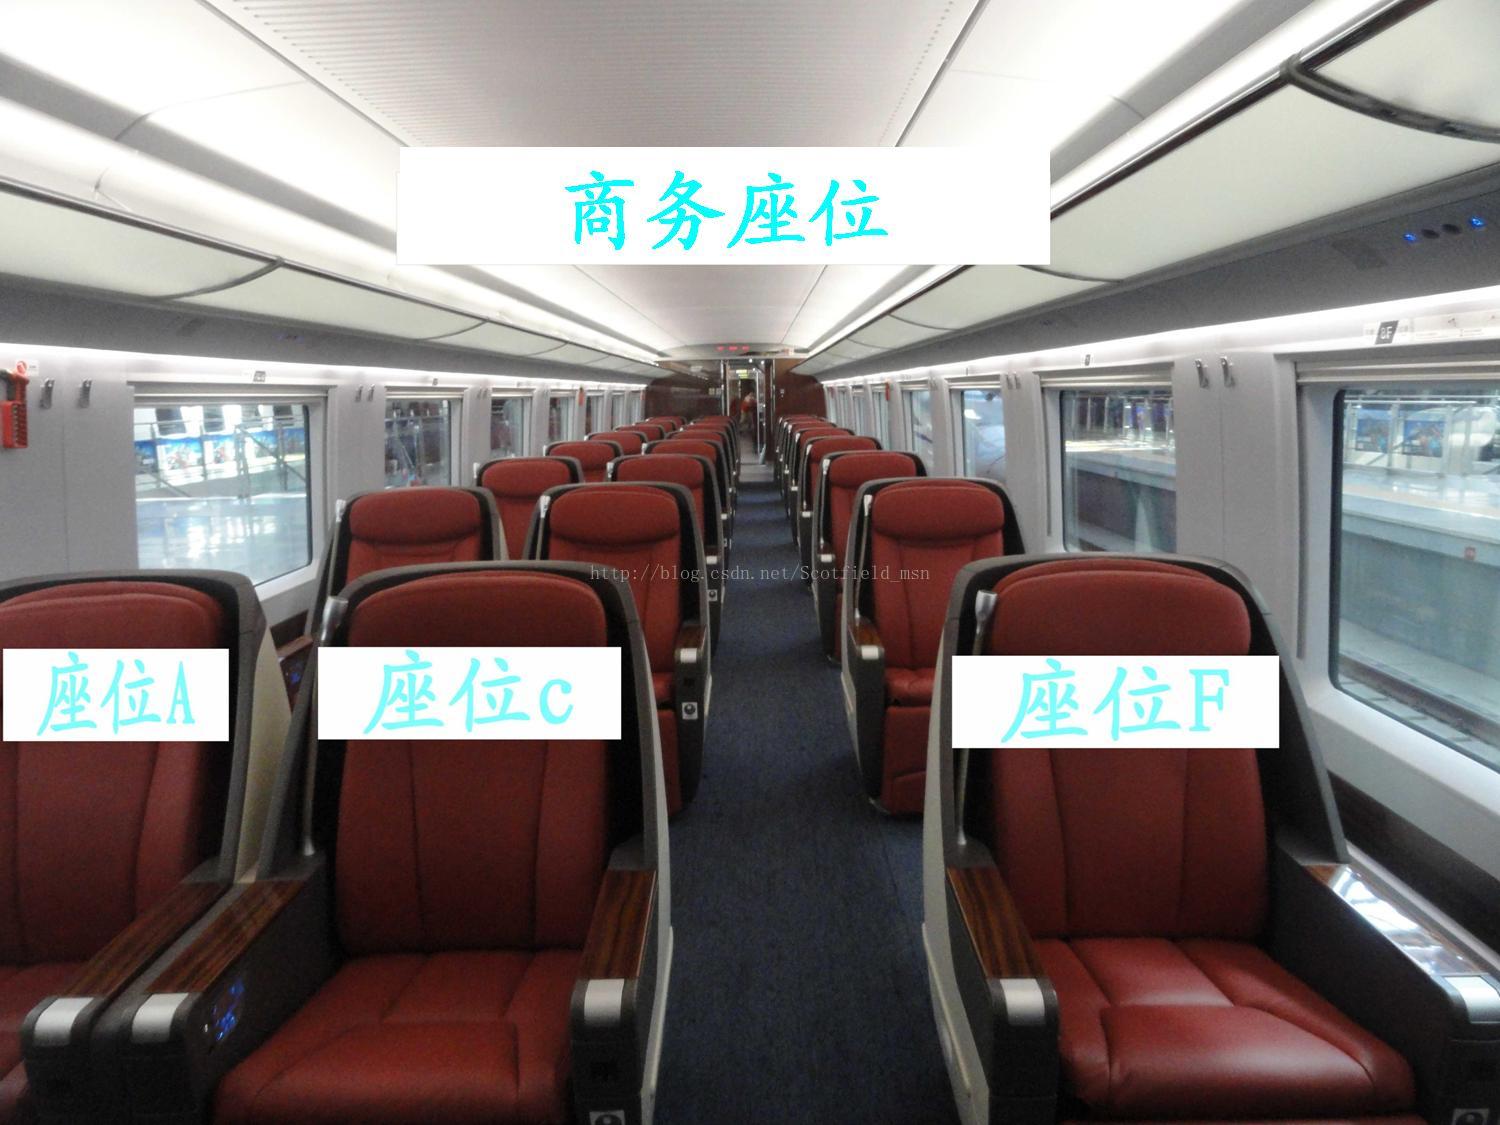 火车车厢座位分布图 k开头火车硬座座位图_华夏智能网